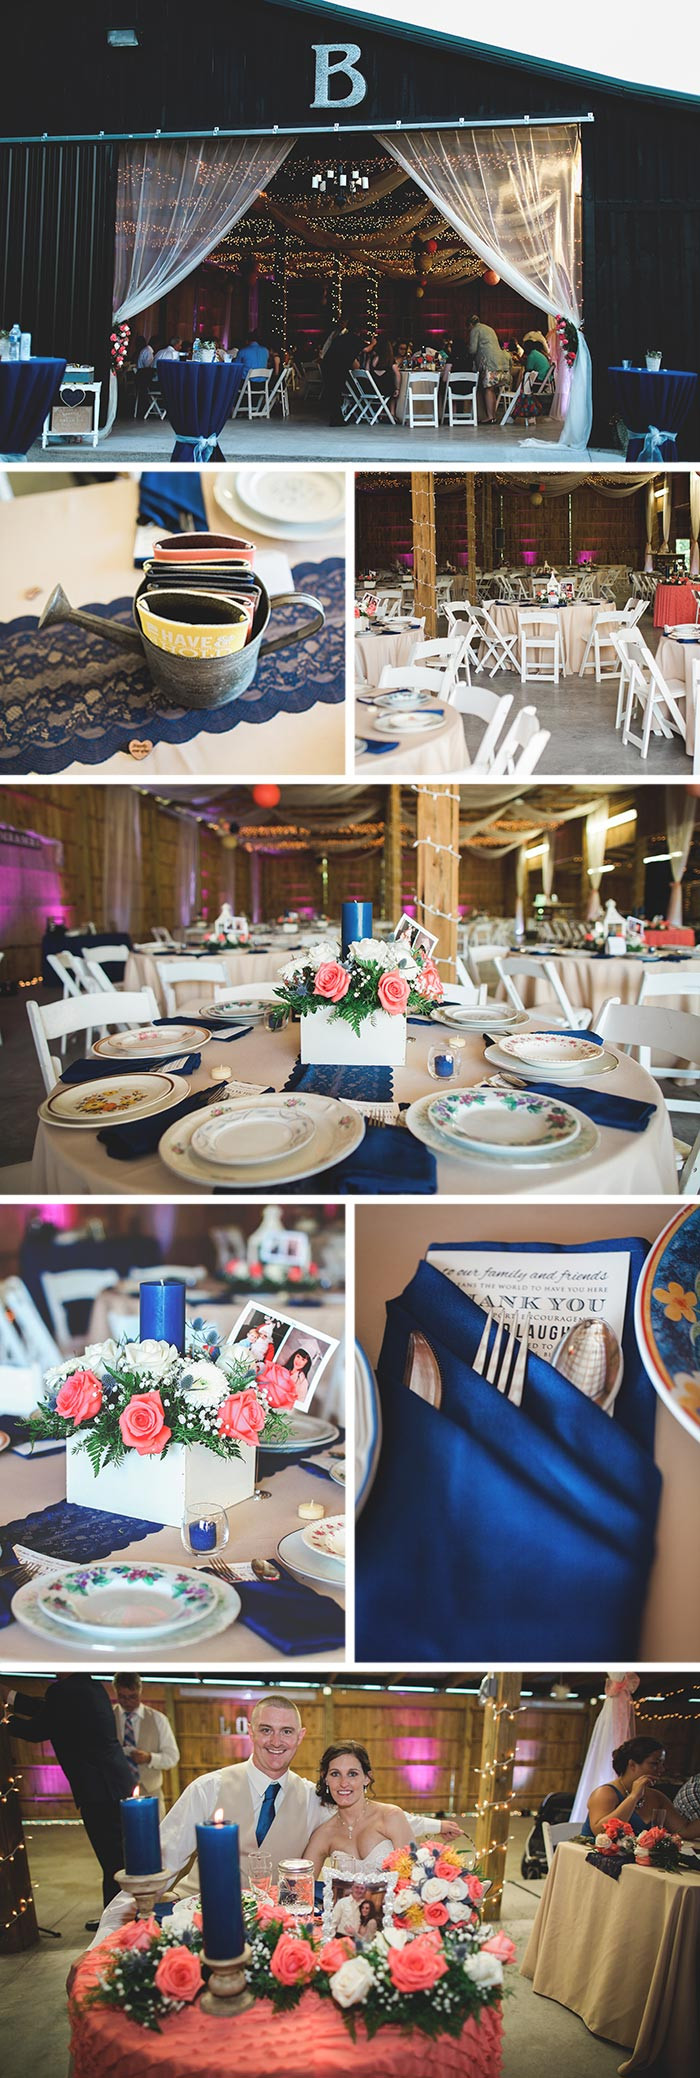 Tischdeko Hochzeit Holz
 Hochzeitsdeko aus Holz I Fotostory mit vielen Dekoideen